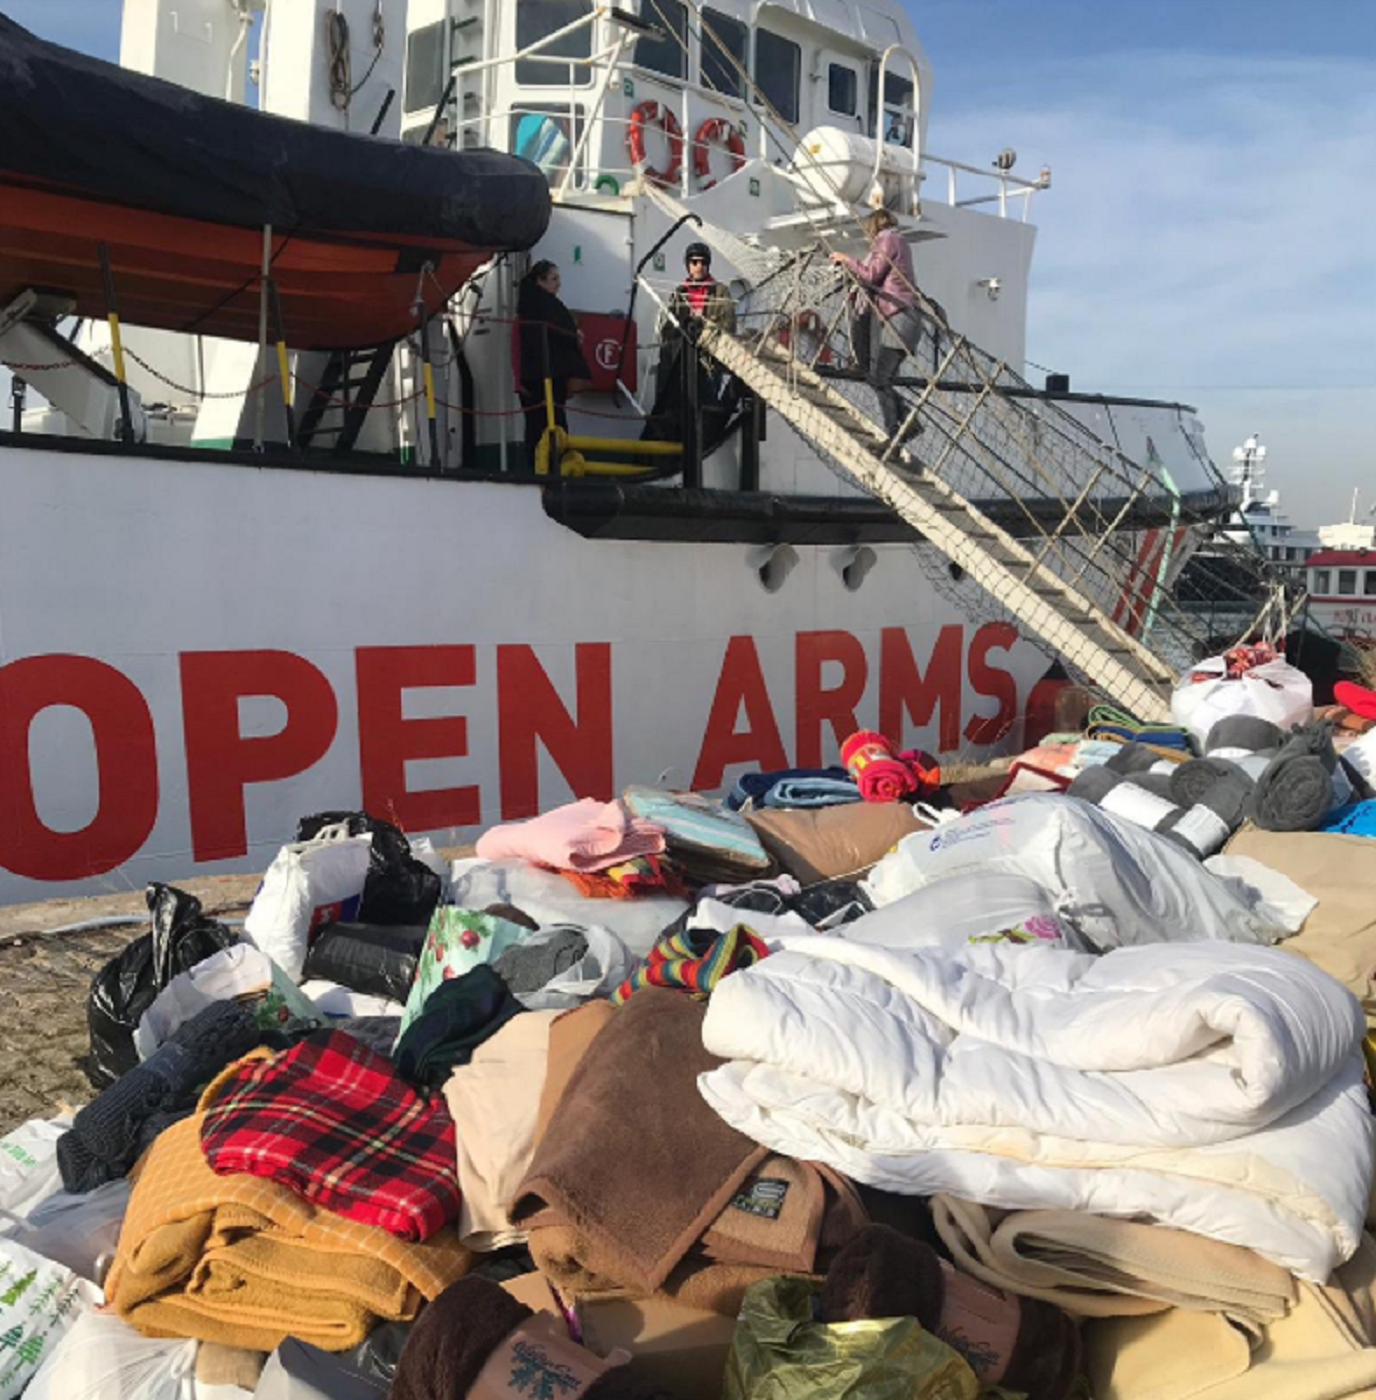 Open Arms recibe más de 3.000 mantas para personas rescatadas en una avalancha de solidaridad